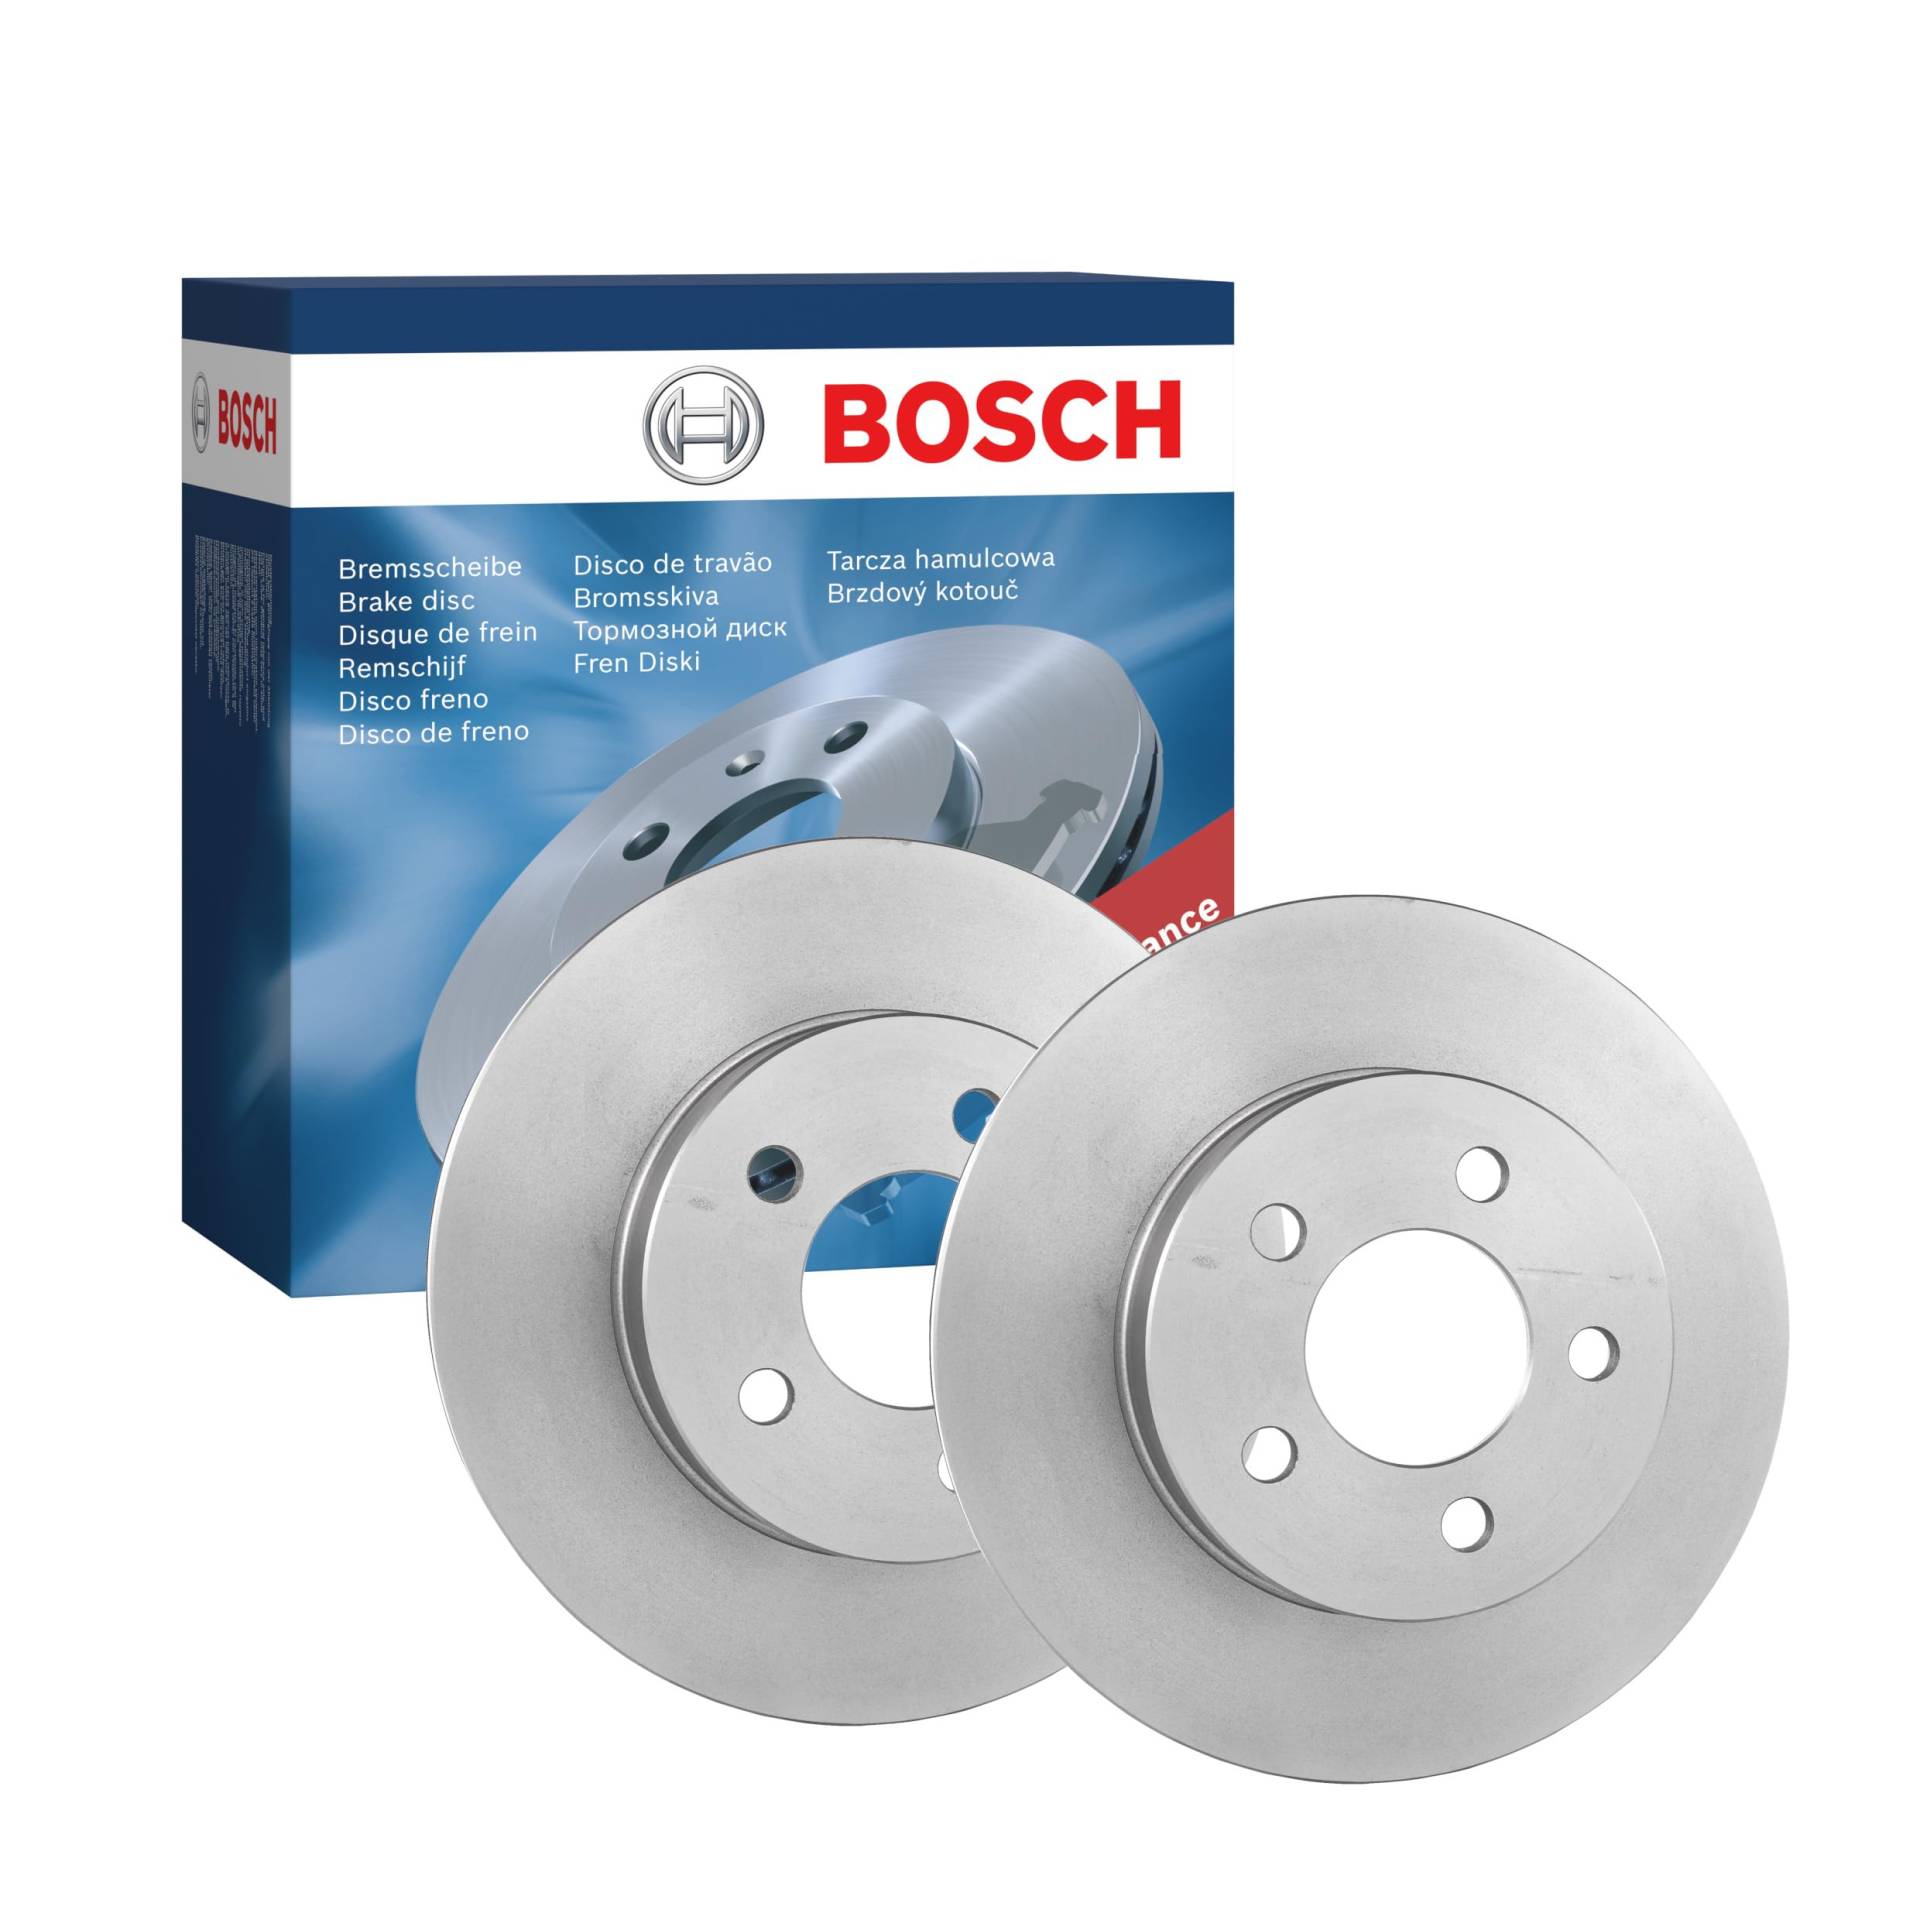 Bosch BD1271 Bremsscheiben - Vorderachse - ECE-R90 Zertifizierung - zwei Bremsscheiben pro Set von Bosch Automotive